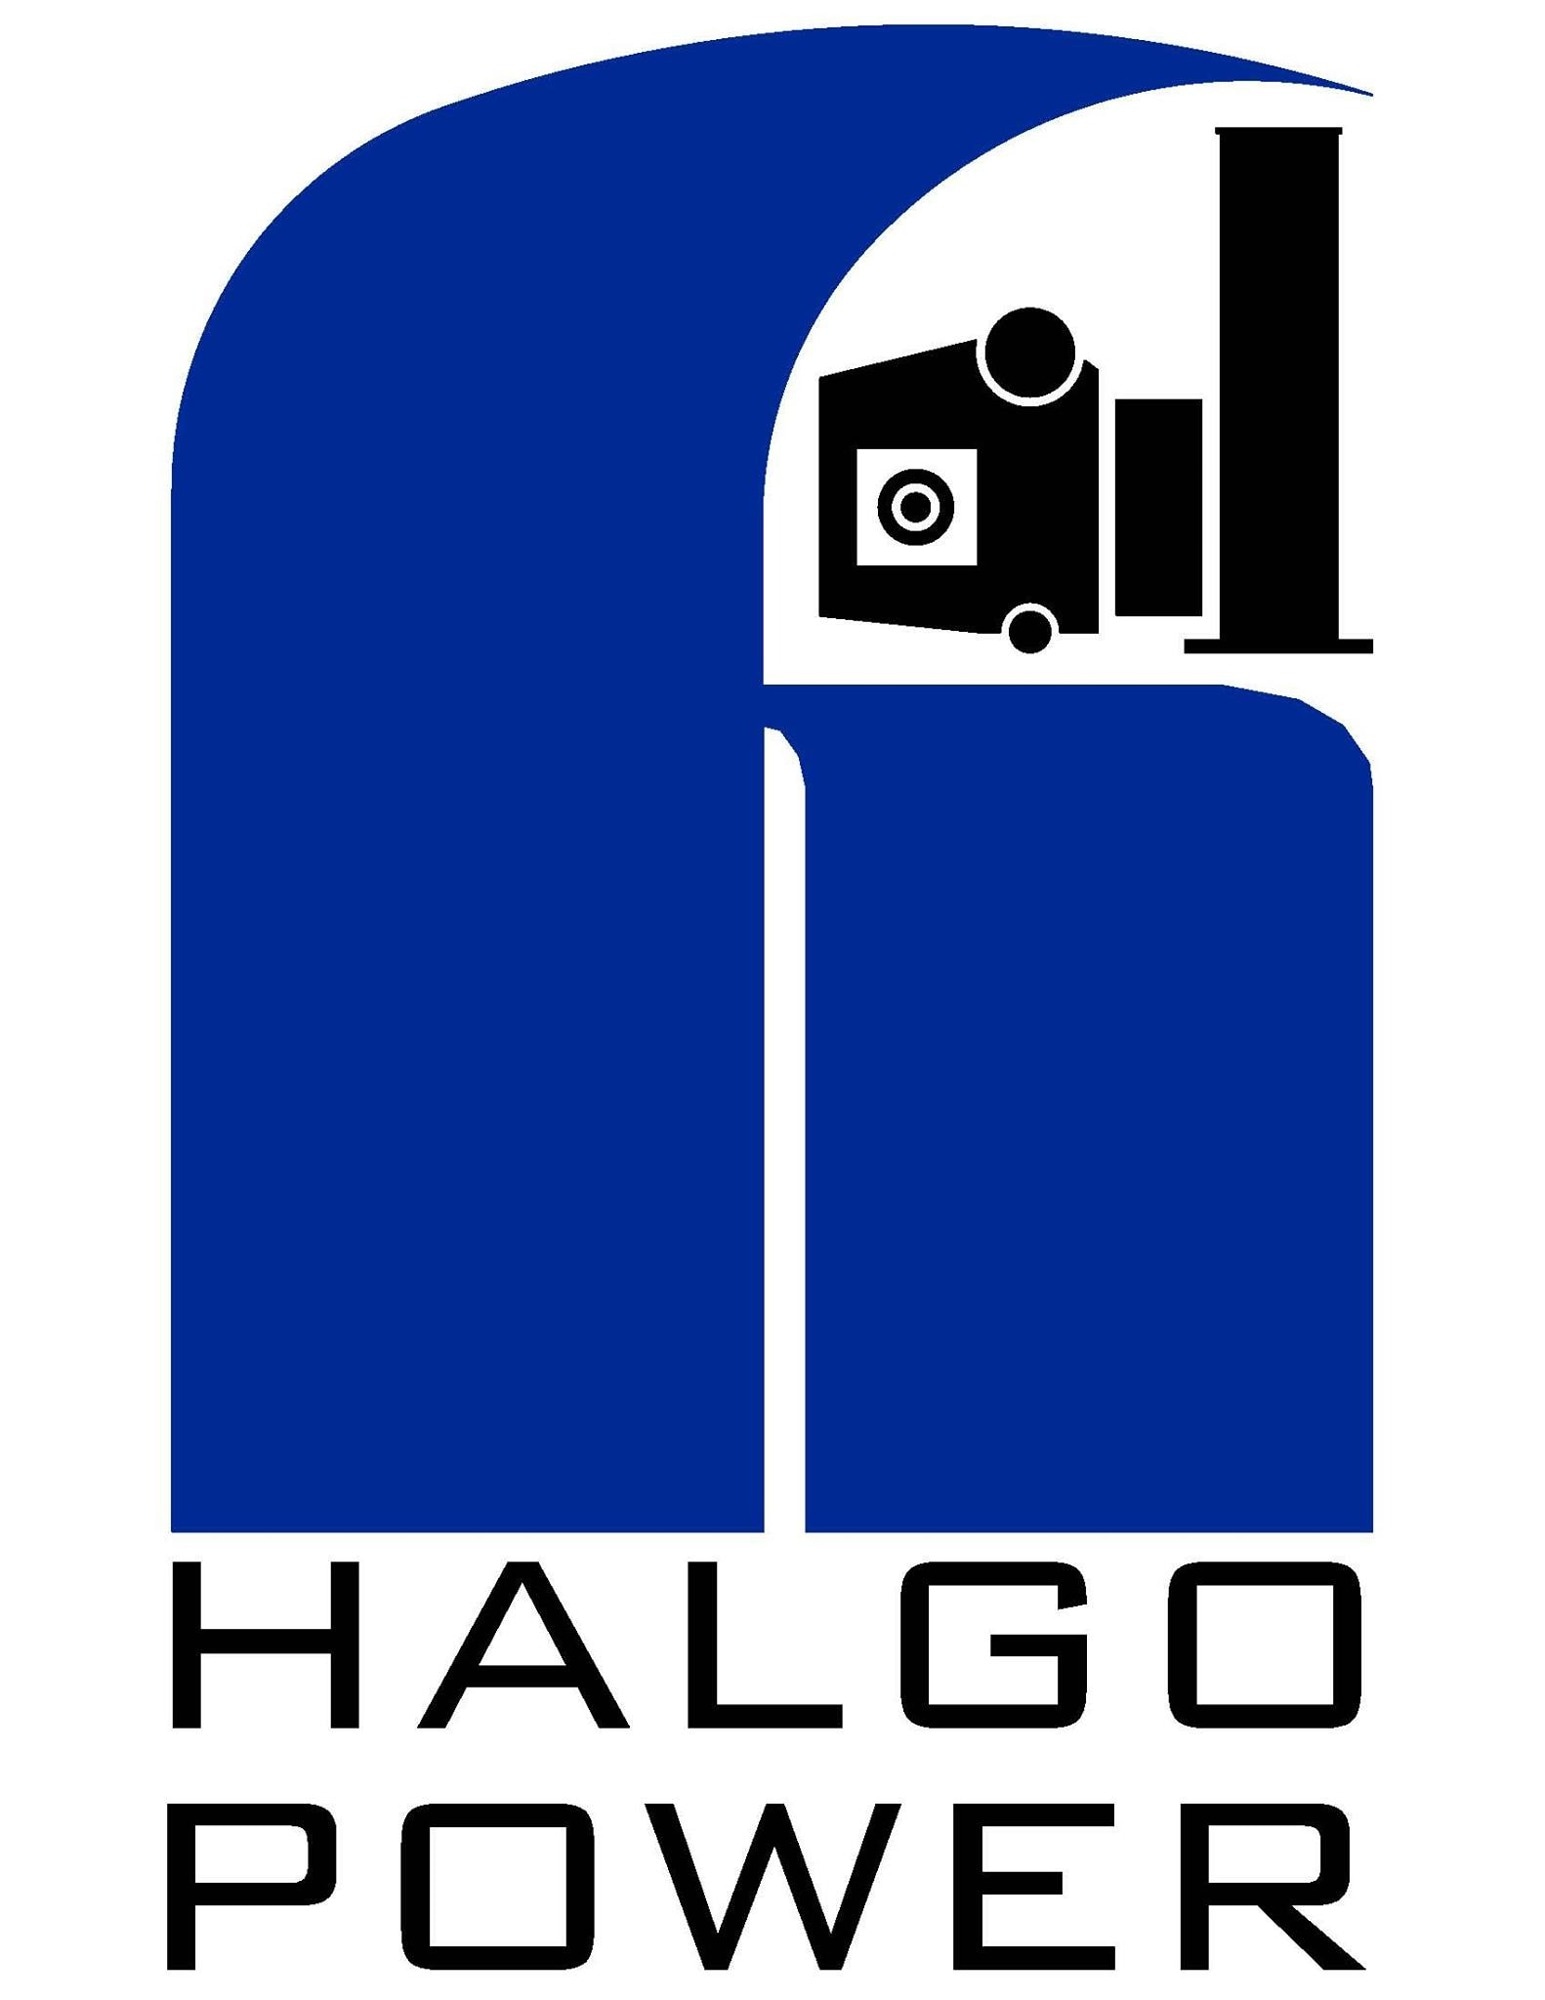 Halgo Power